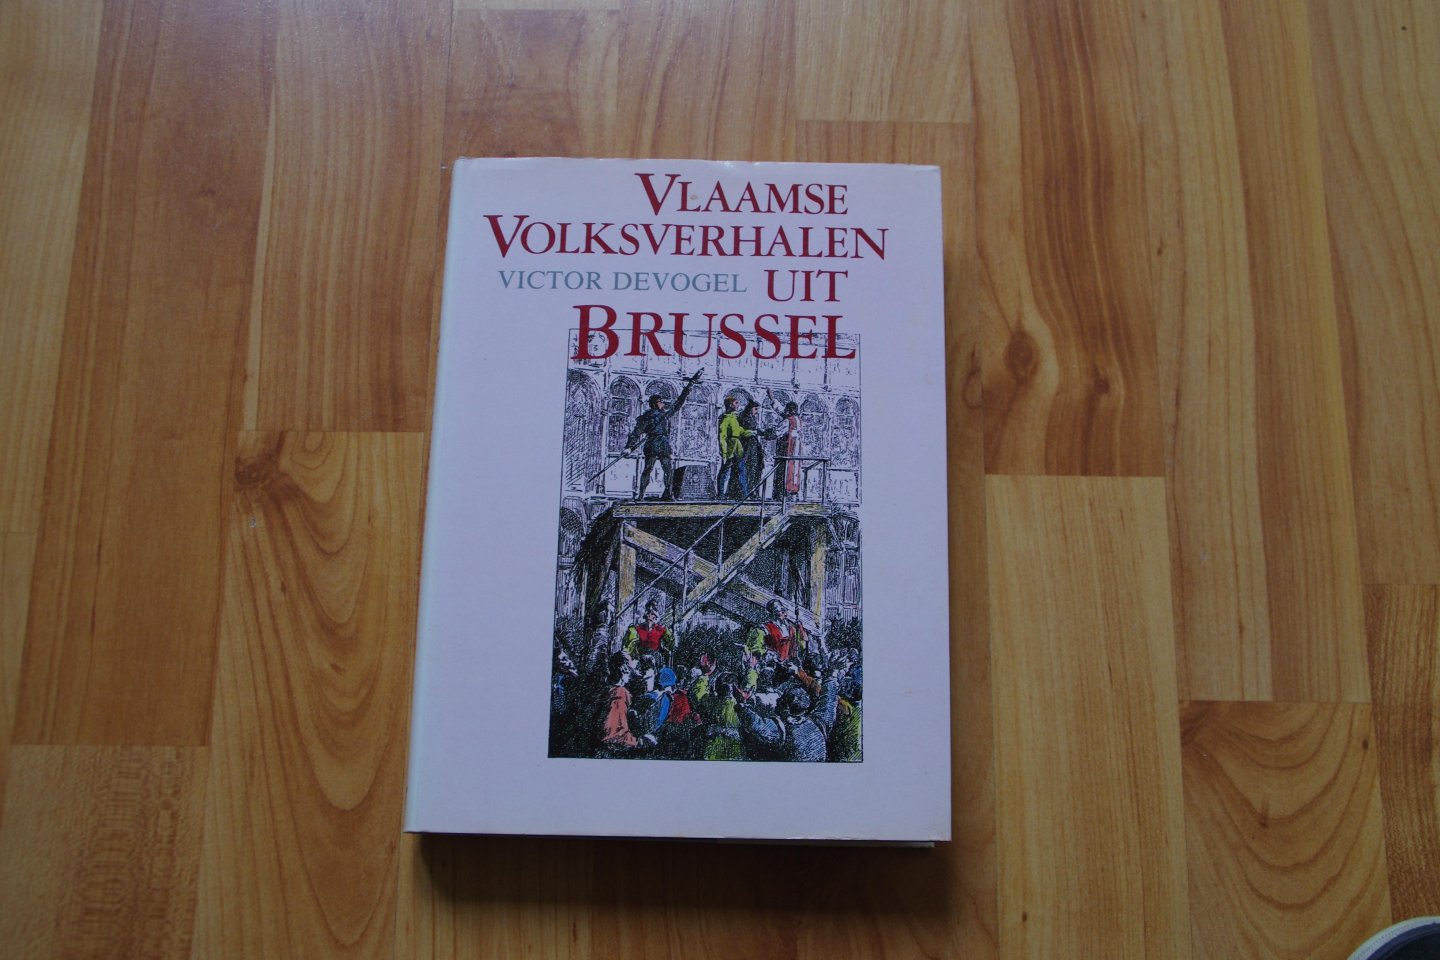 Devogel - Vlaamse volksverhalen uit brussel / druk 1